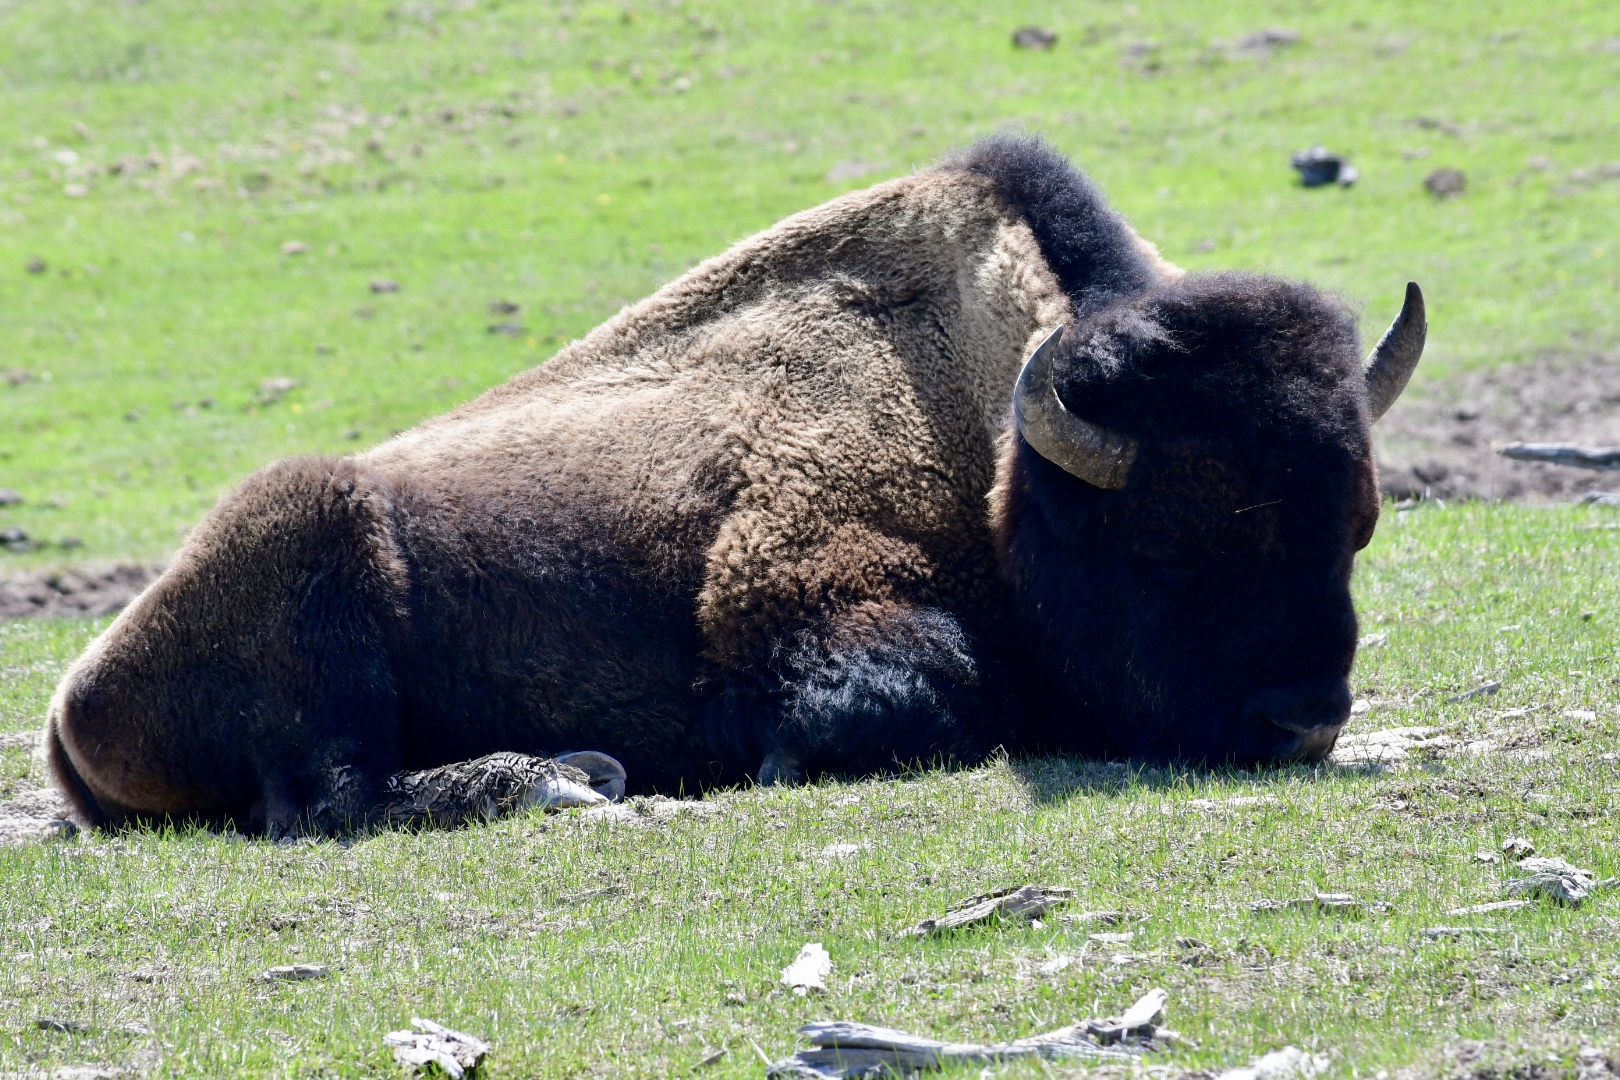 großer brauner Bison mit gewaltigem Kopf und schwarzer Mähne liegt auf grüner Wiese